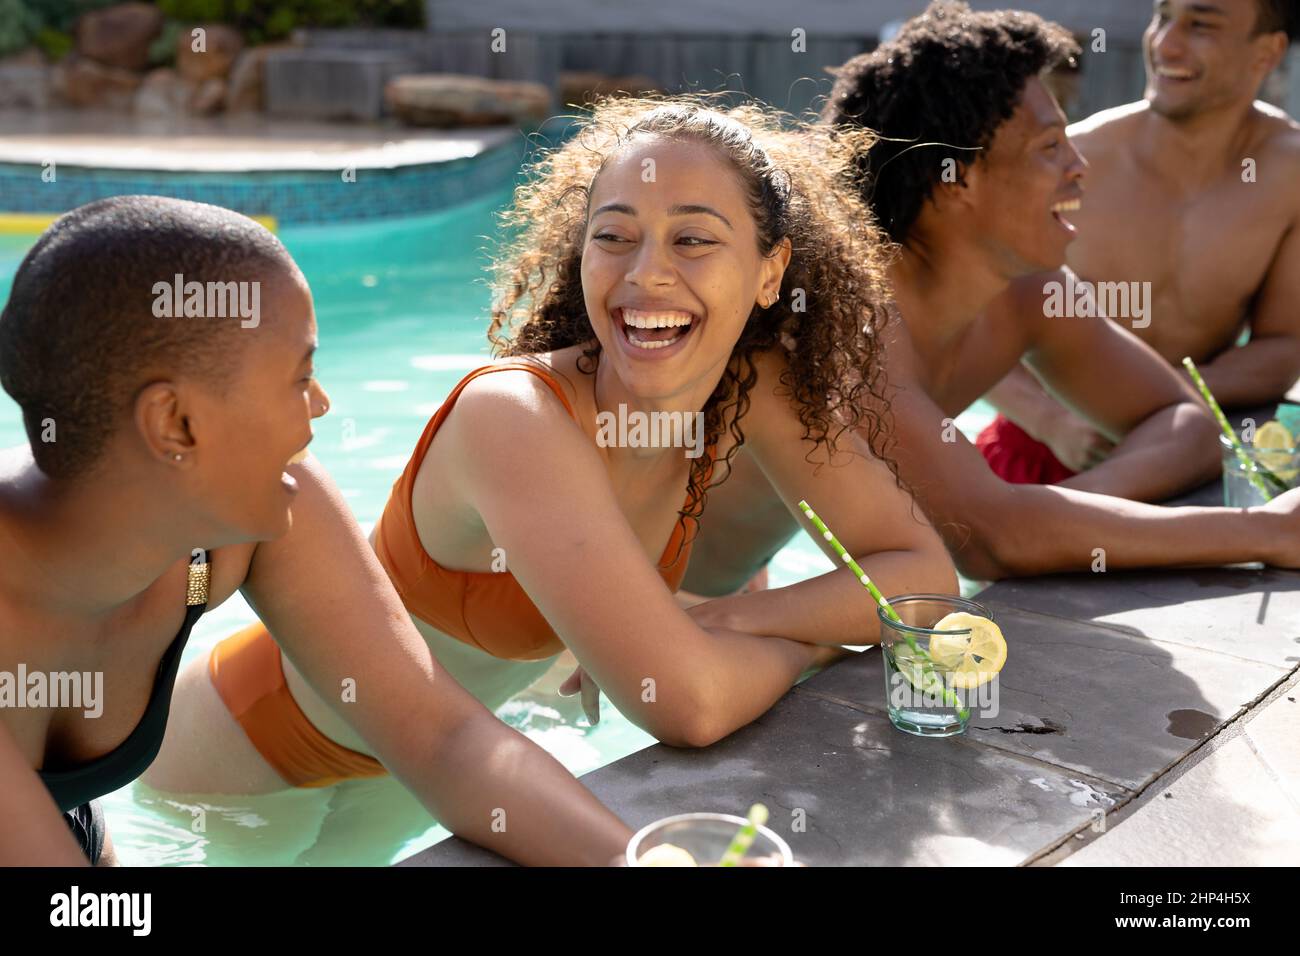 De jeunes amis multiraciaux joyeux se penchent sur la piscine par beau temps Banque D'Images